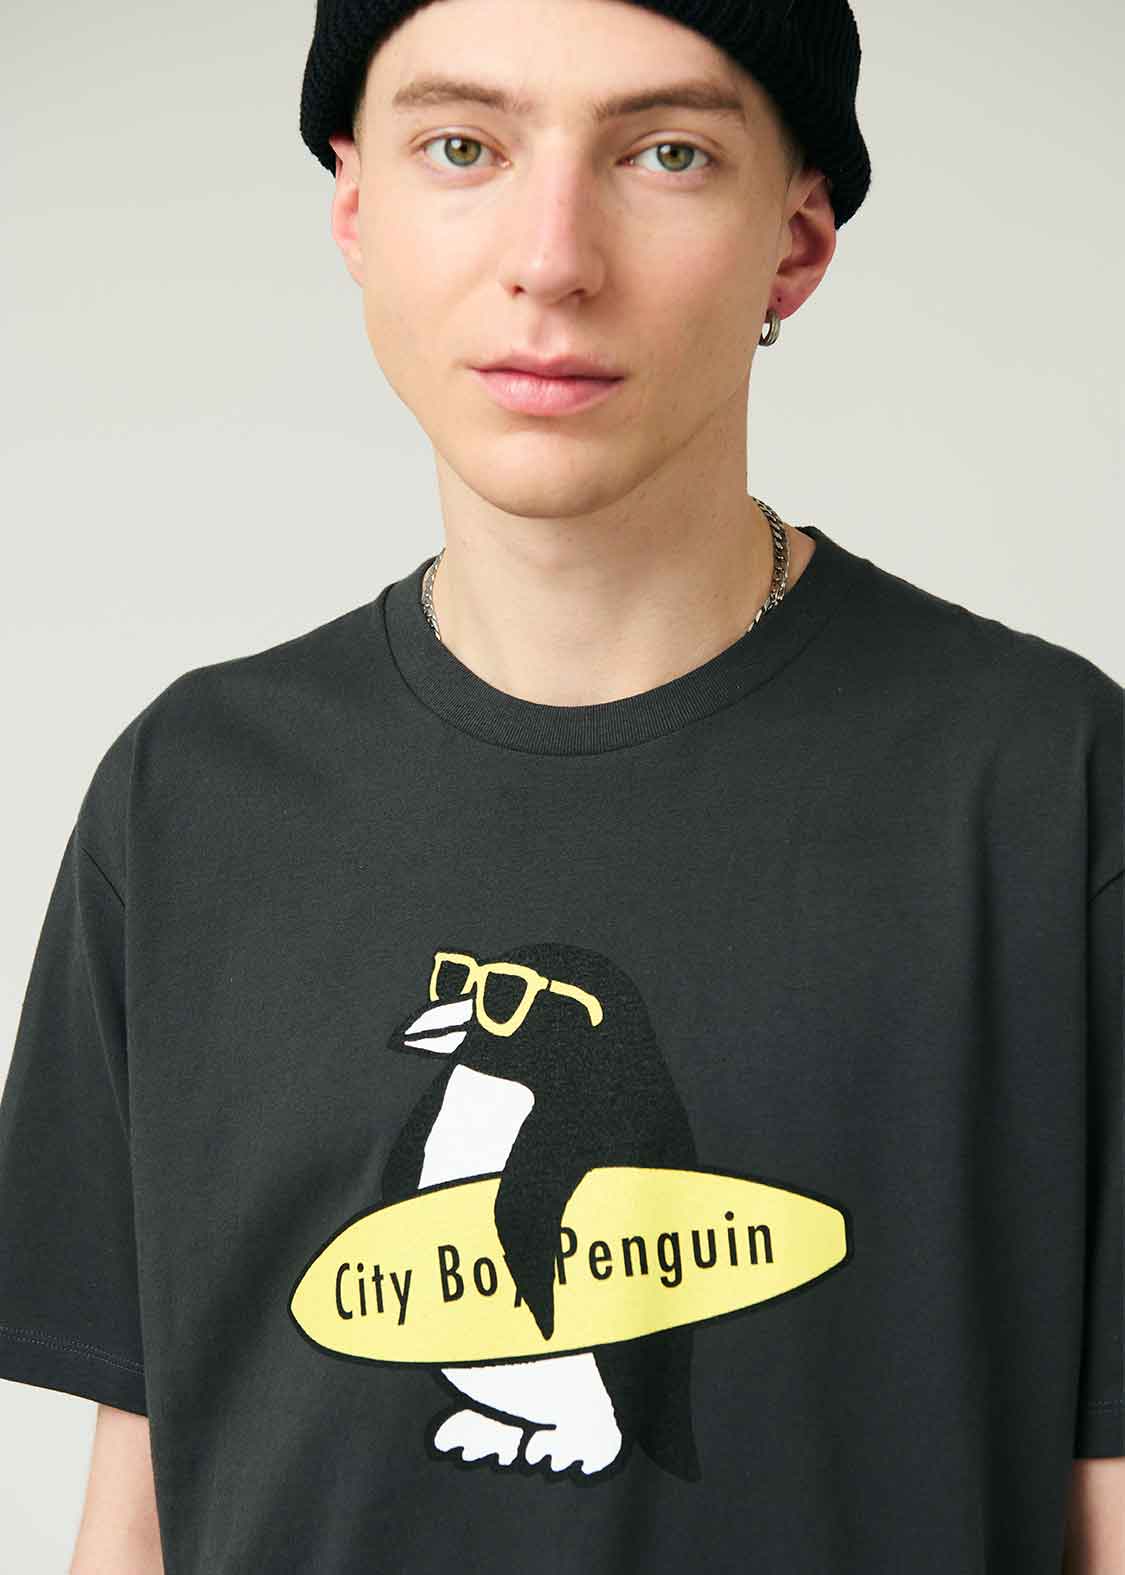 City boy Penguin Surf